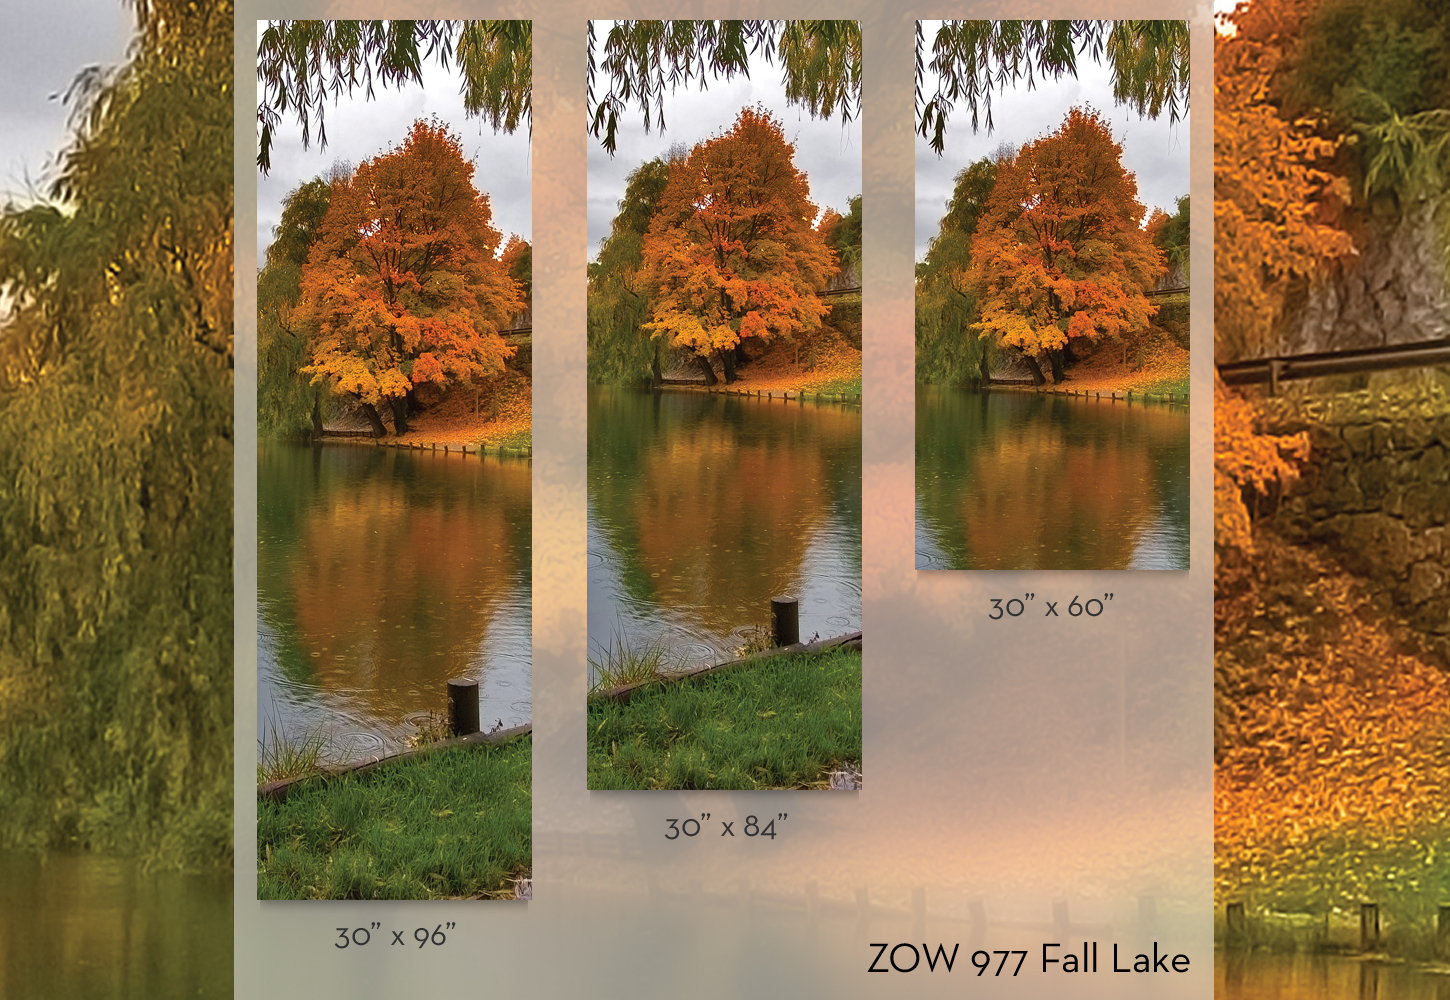 ZOW 977 Fall Lake